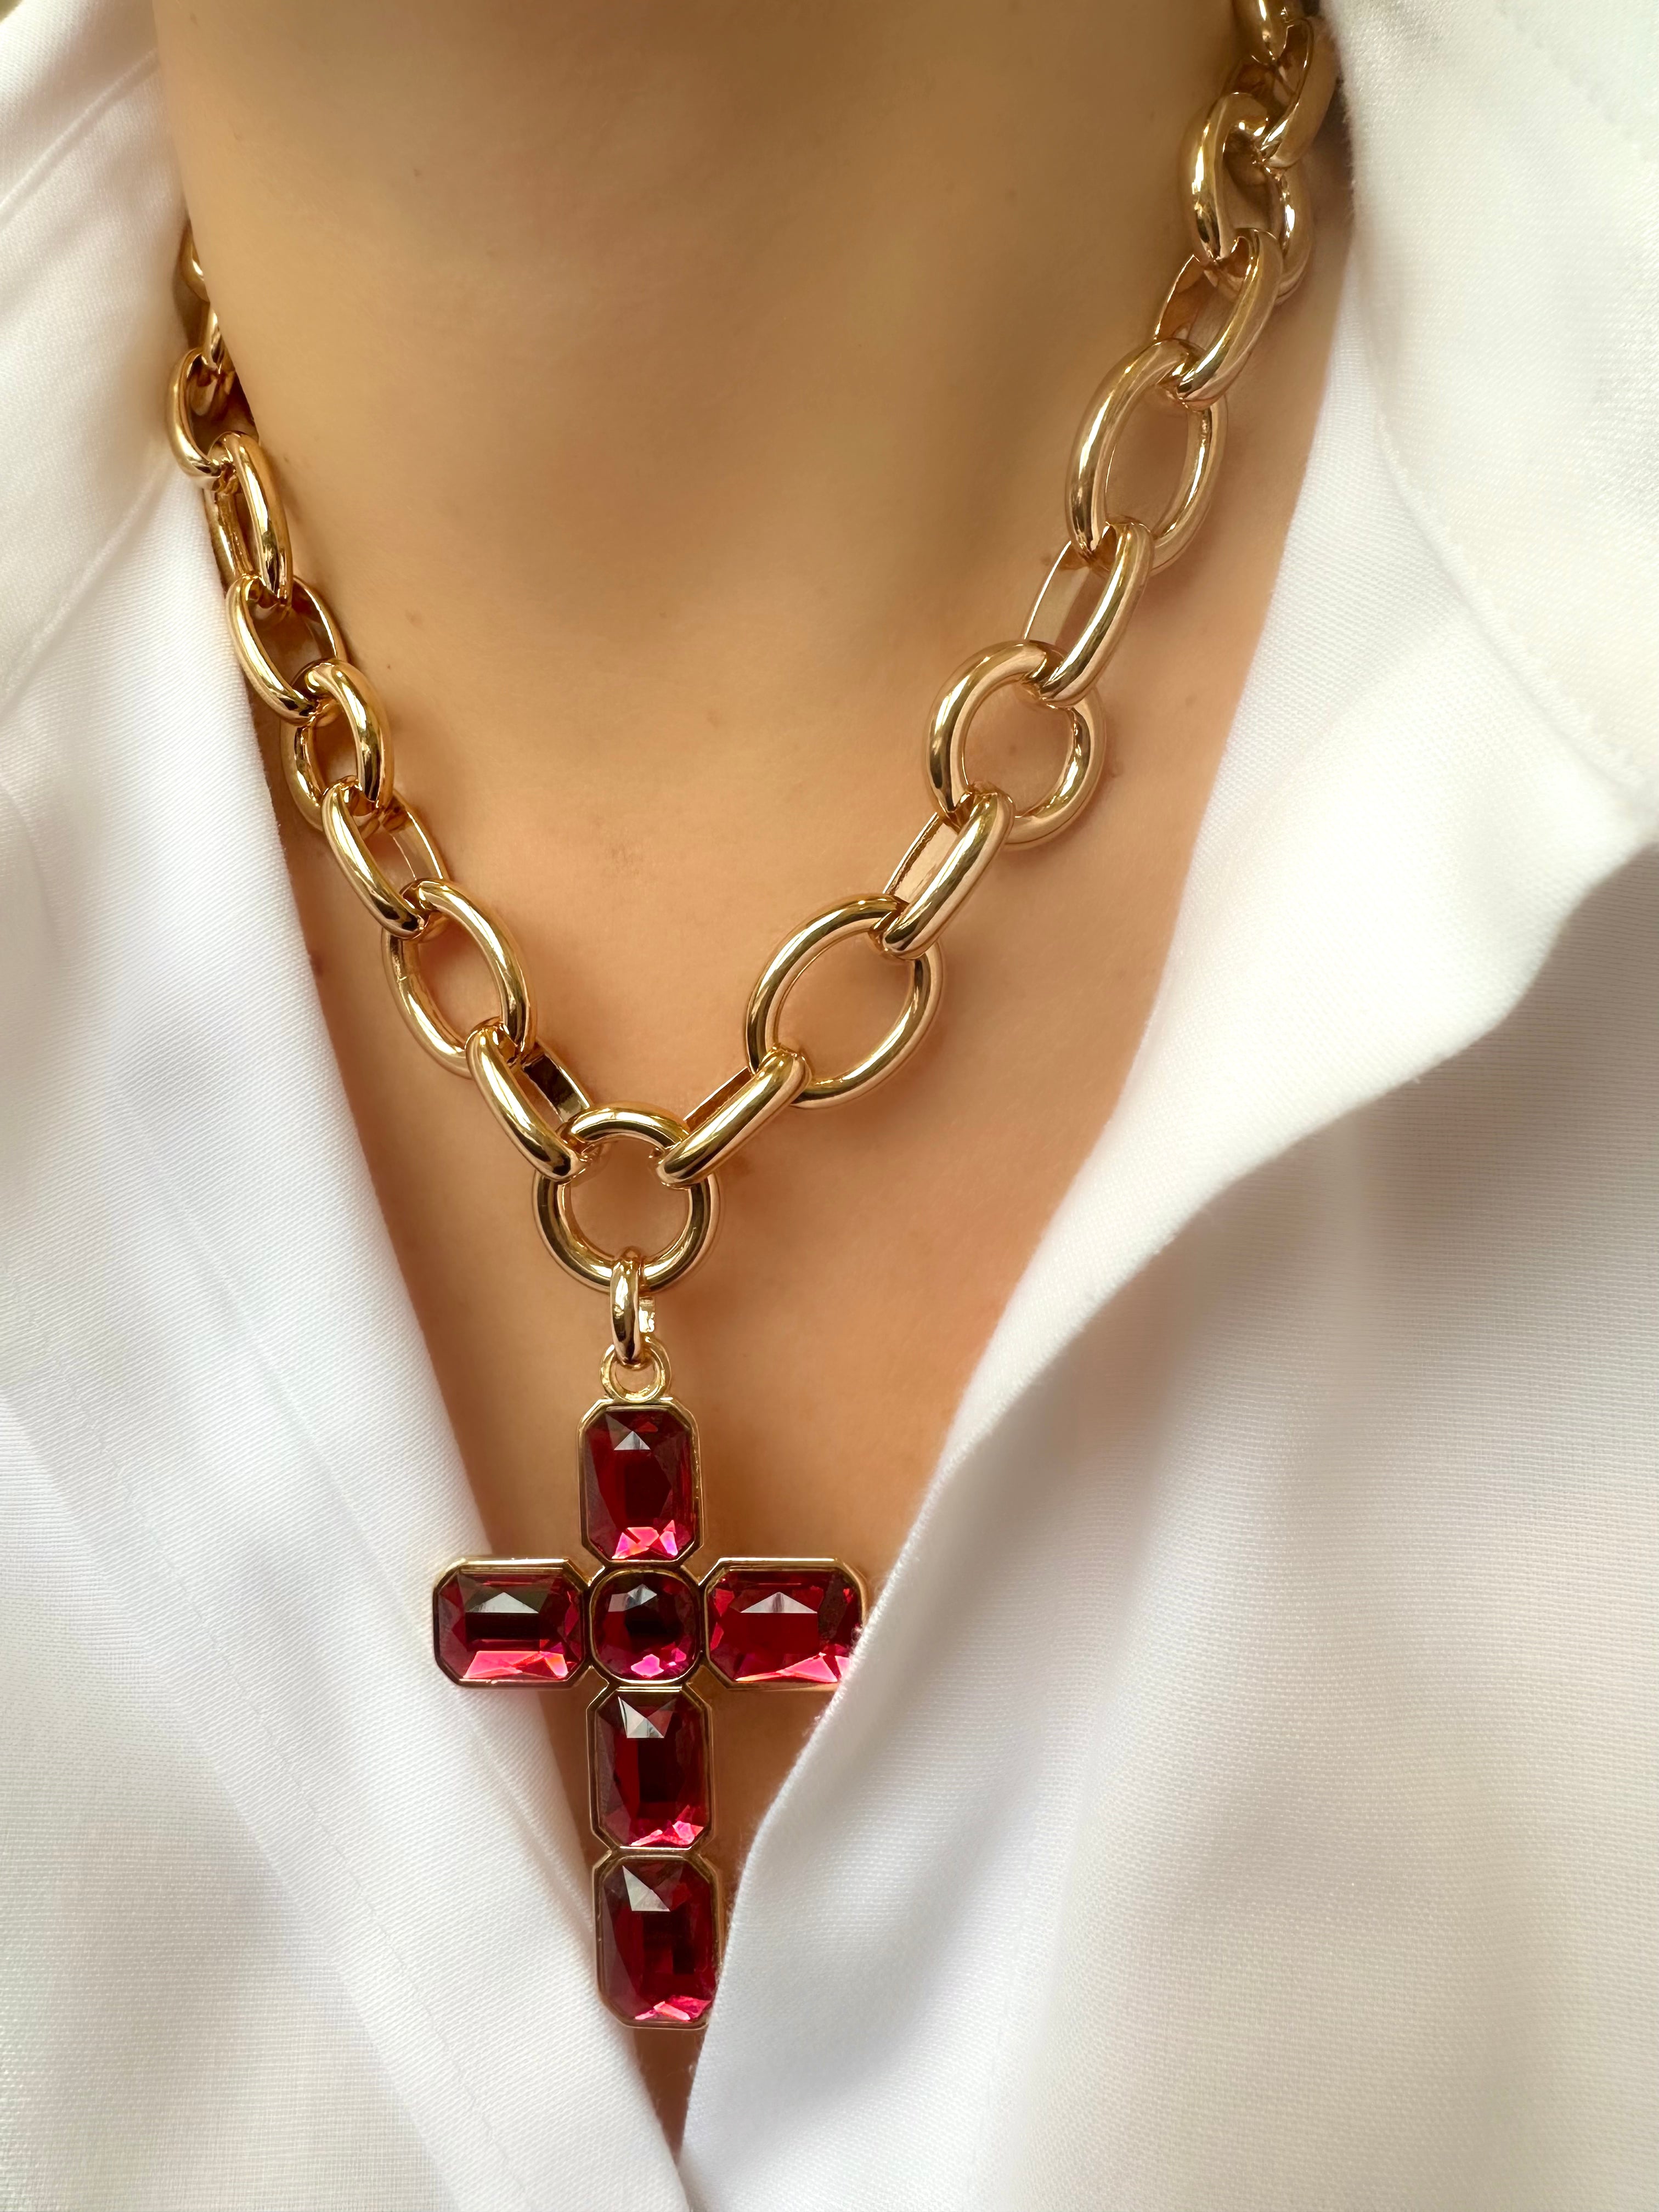 Le Marshand®  -  Joyería en plata 925, chapado en Oro 24K - Collar Gran Cruz Roja - Diseños propios - Brazaletes, pulseras, collares y pendientes - Joyería online - Mallorca